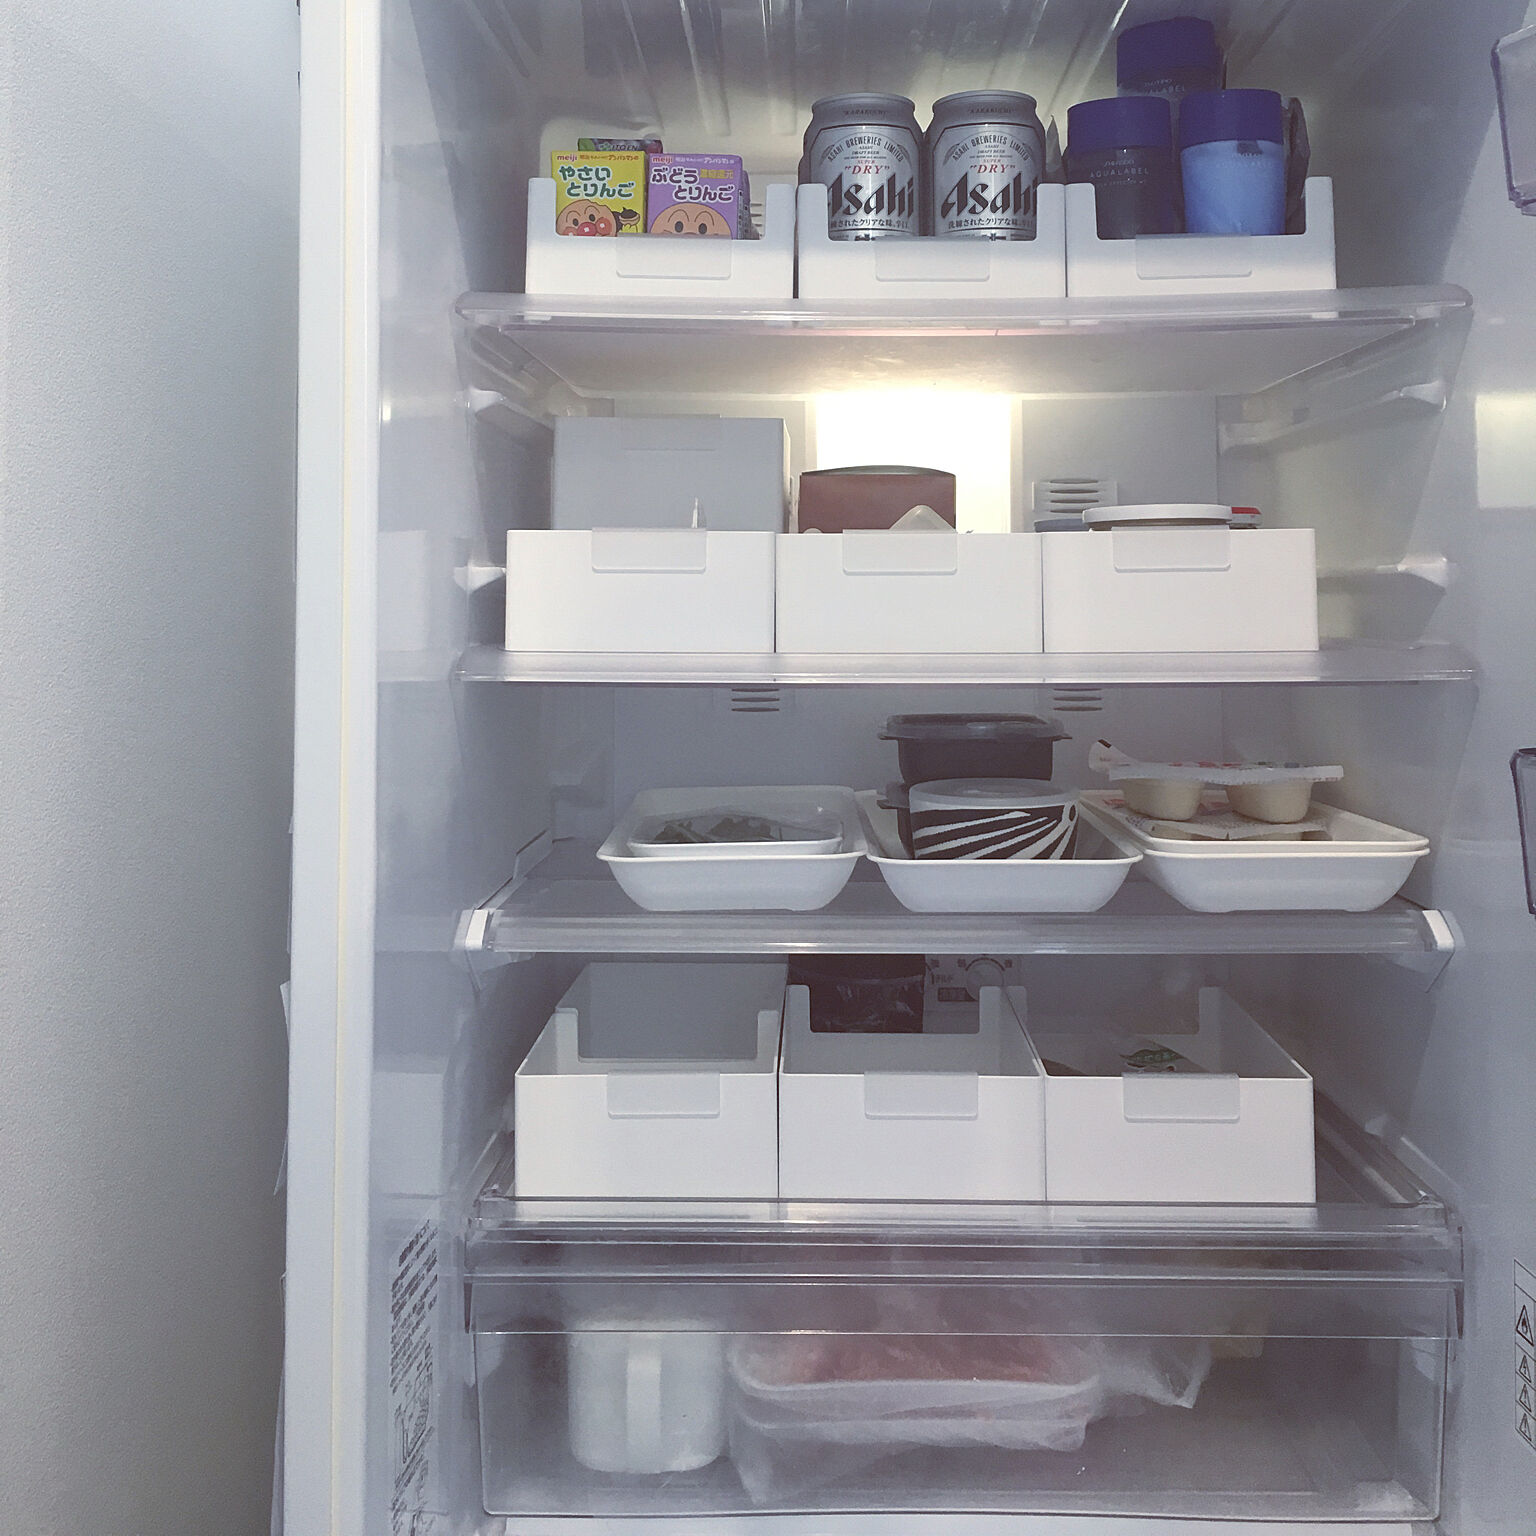 冷蔵庫はいつもきれいに 汚さない工夫とお掃除のコツ Roomclip Mag 暮らしとインテリアのwebマガジン